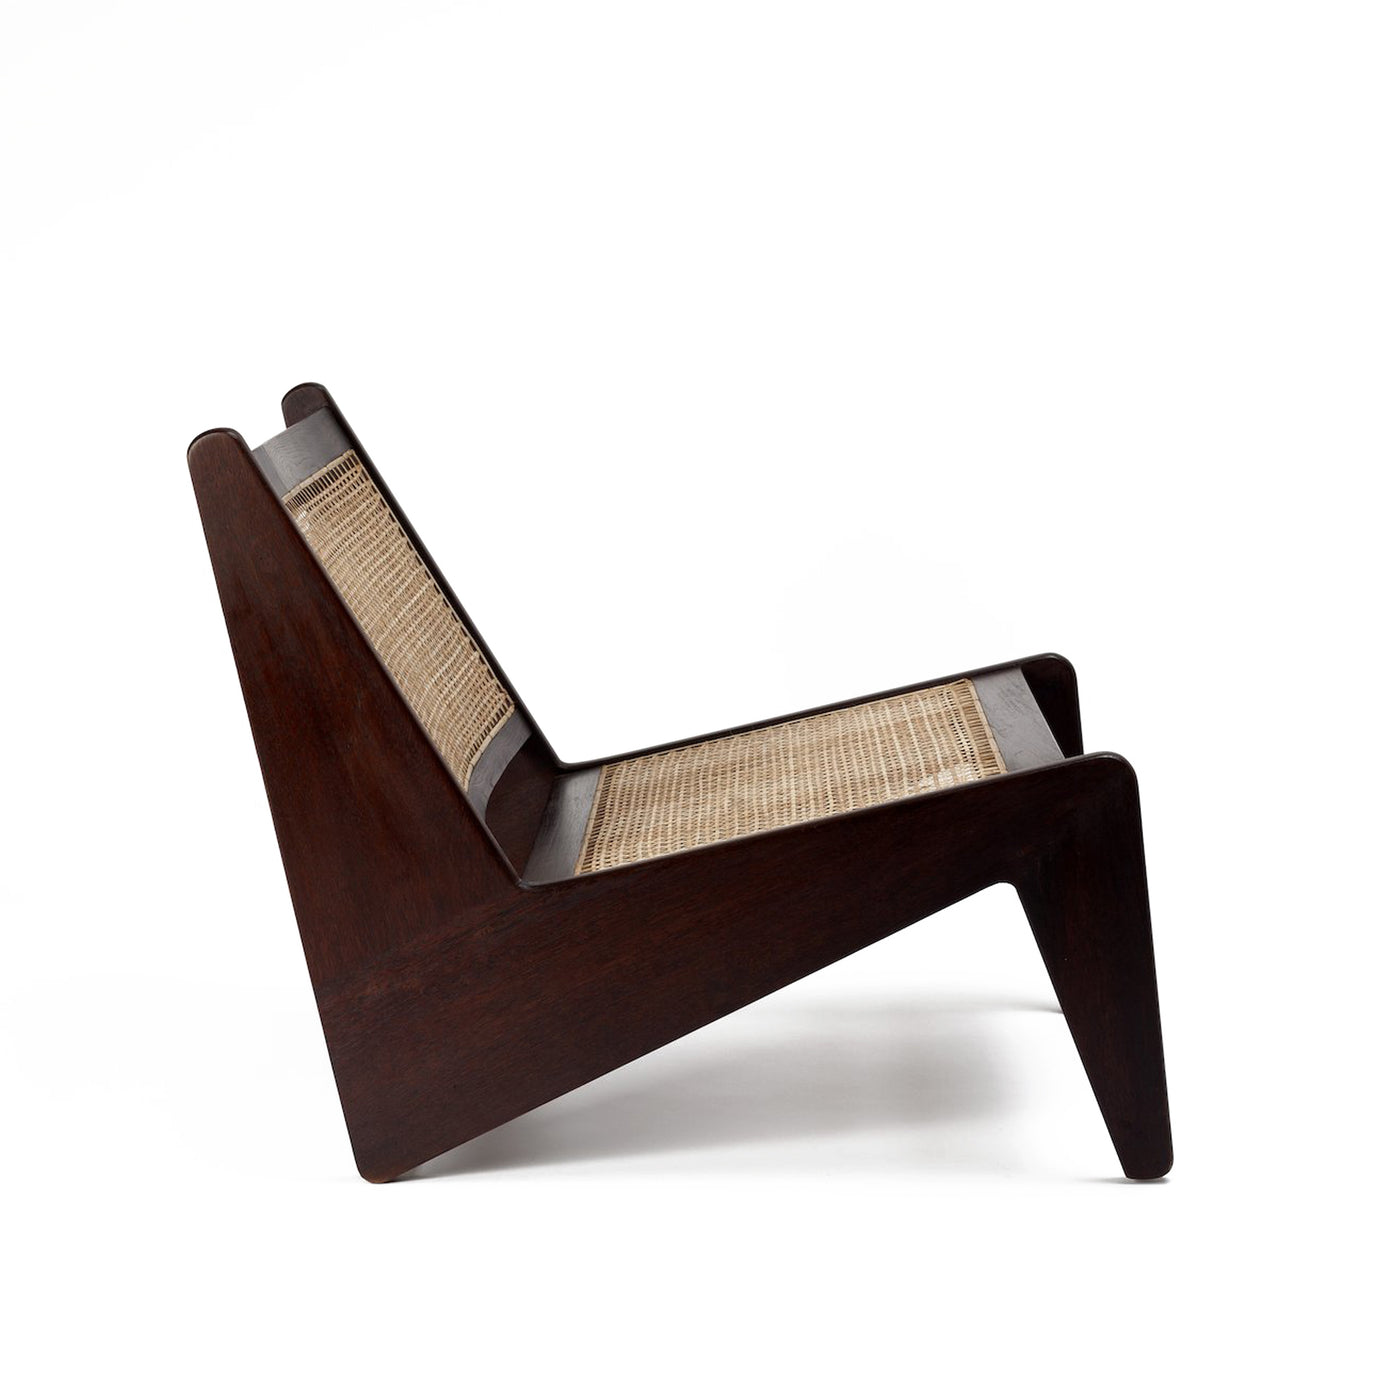 Pierre Jaenneret, židle podle pierre jeanneret, design 50. let, minimaistická židle, Srelle, Židle do minimalistických interiérů, luxusní židle, Pierre židle, kangaroo chair<<<<<<